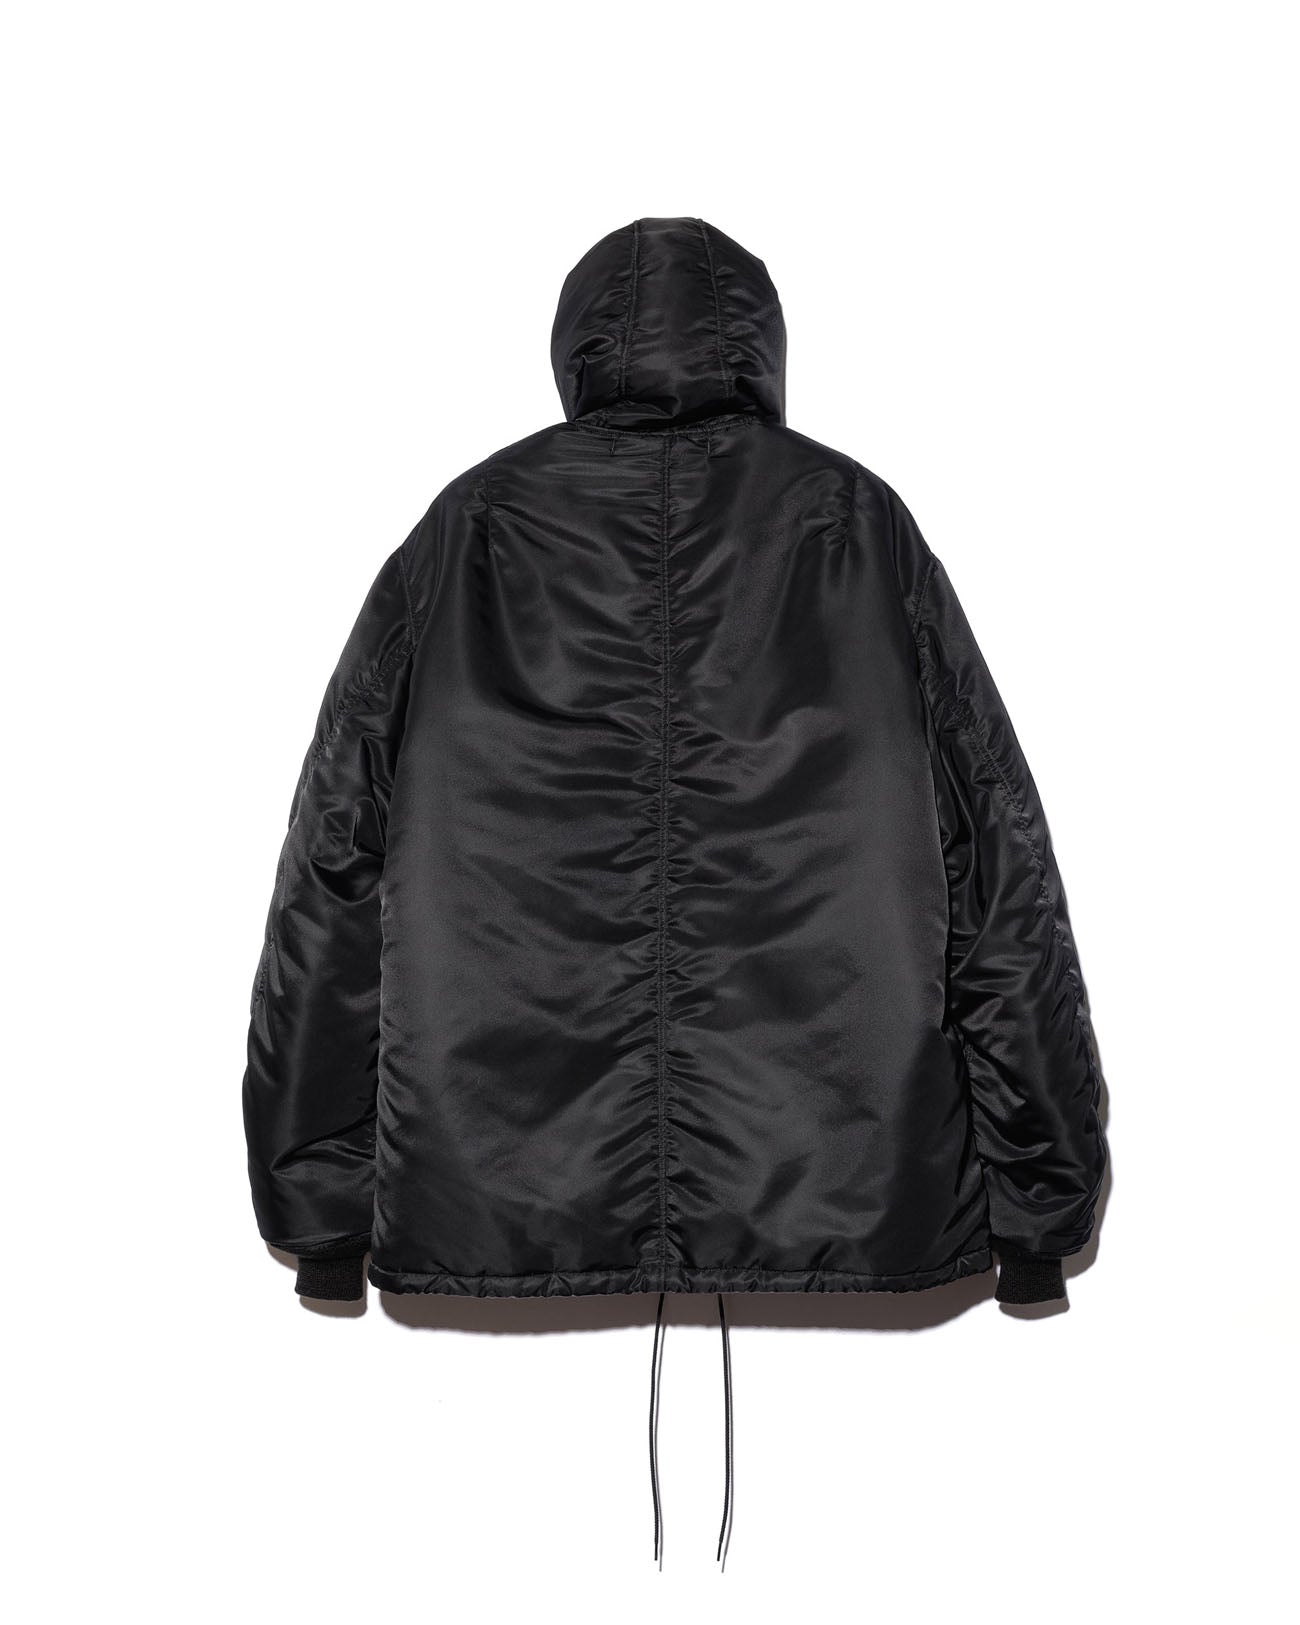 MA-1 hooded jacket